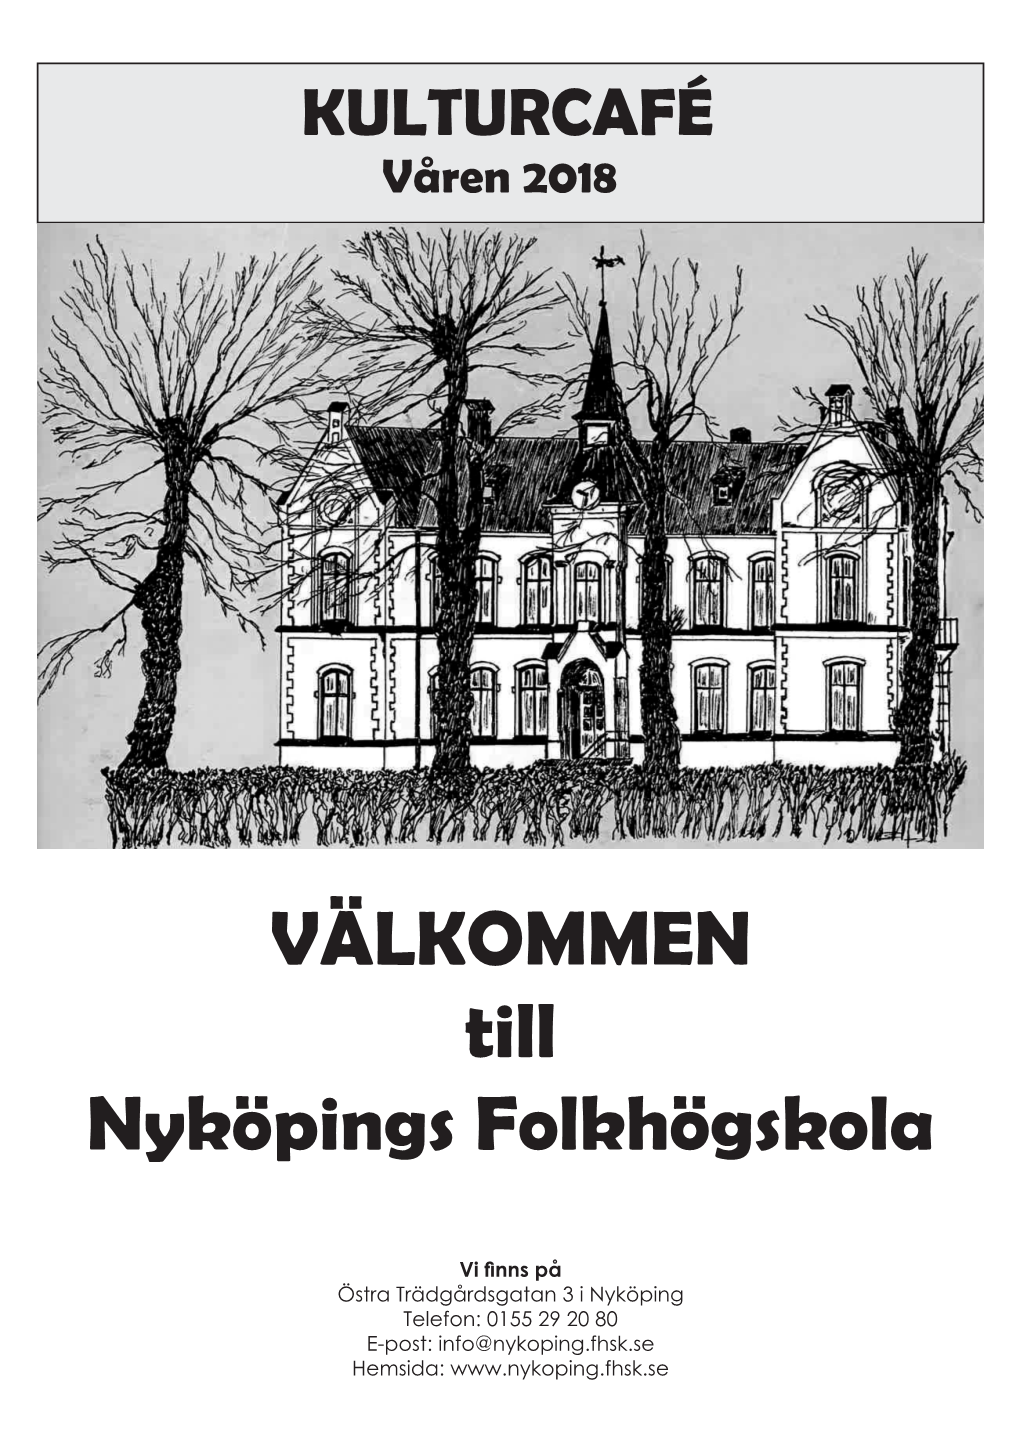 VÄLKOMMEN Till Nyköpings Folkhögskola